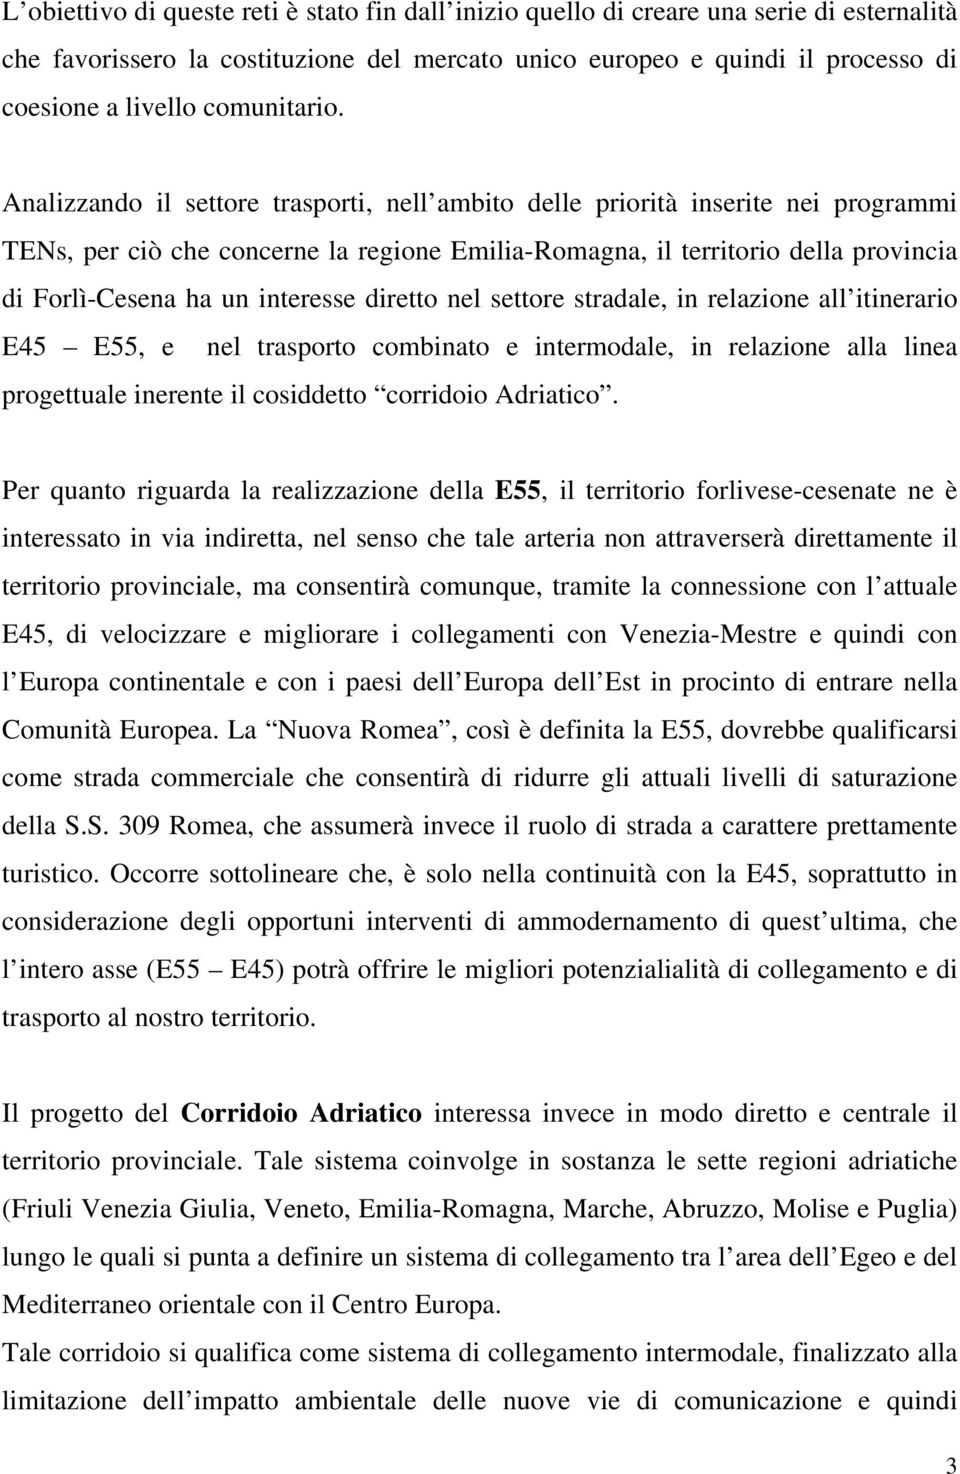 Analizzando il settore trasporti, nell ambito delle priorità inserite nei programmi TENs, per ciò che concerne la regione Emilia-Romagna, il territorio della provincia di Forlì-Cesena ha un interesse